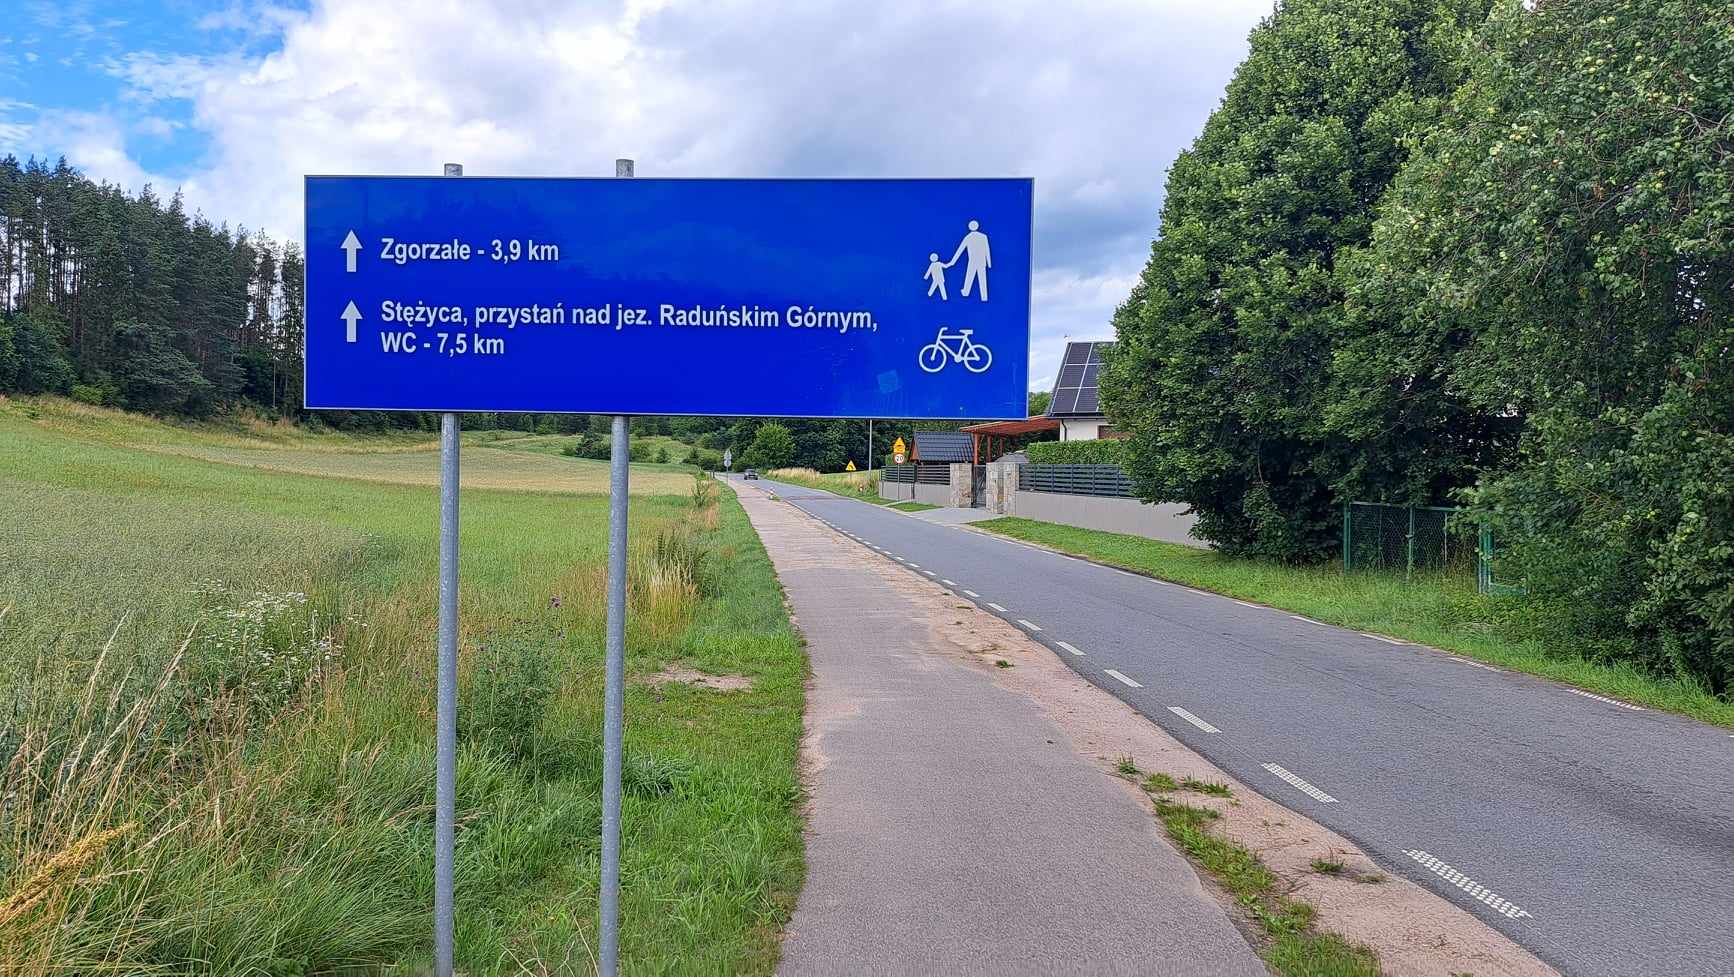 Znak drogowy przy trasie Gołubie – Stężyca – Żuromino – Borucino – Kamienica Szlachecka – Wygoda Łączyńska – Zgorzałe - Gołubie